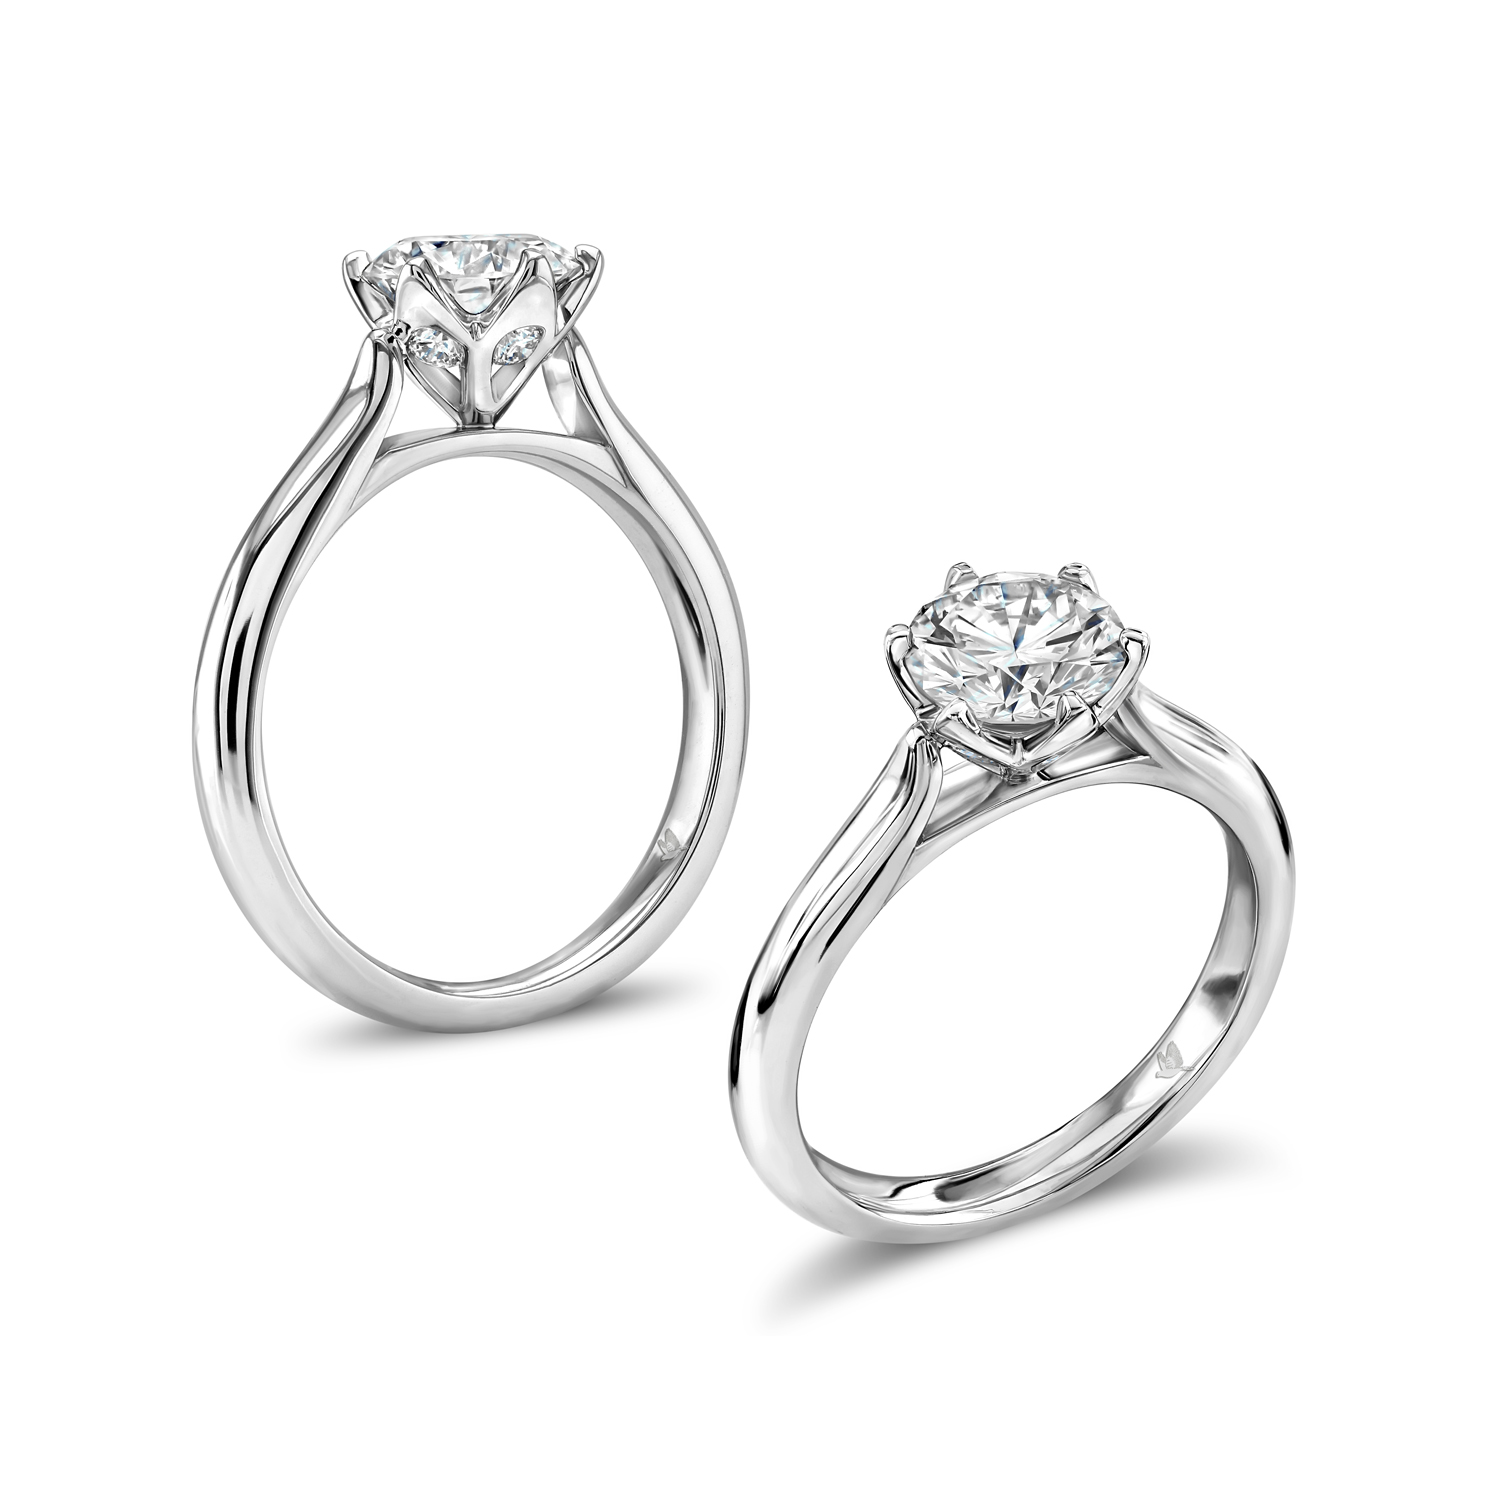 Six claw set brilliant cut diamond ring in petal setting